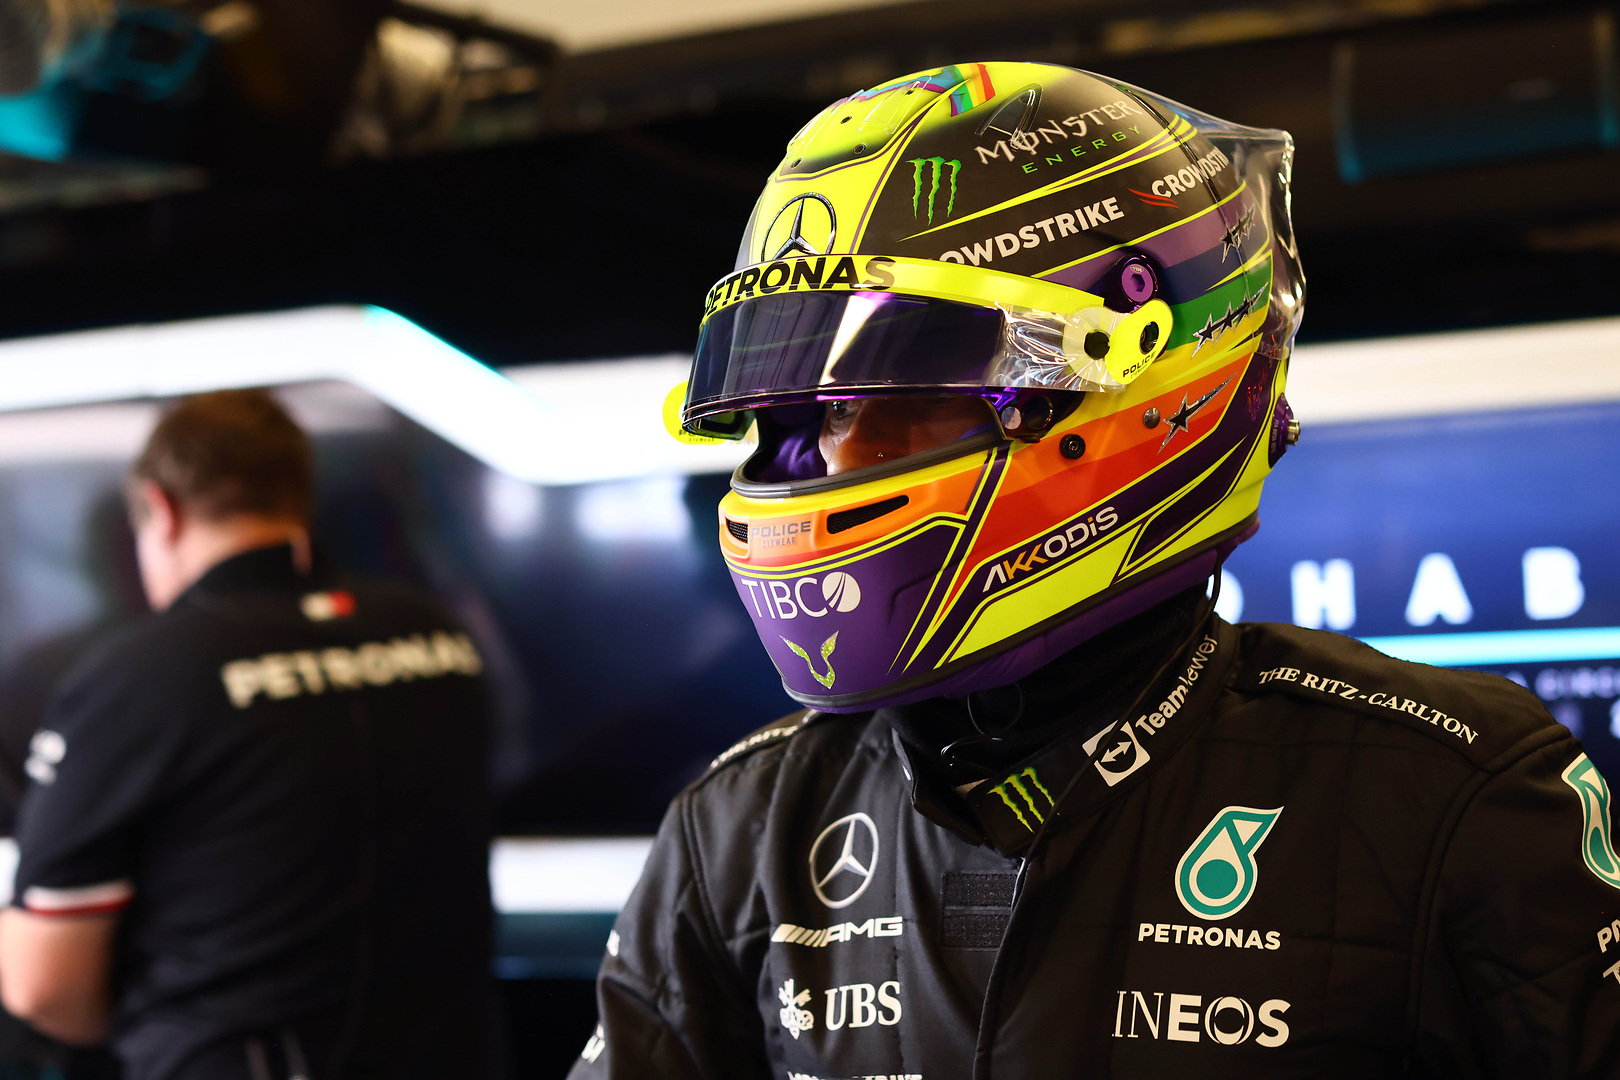 Hamilton tanpa kemenangan mengatakan balapan terakhir seperti ‘seluruh musim disimpulkan’